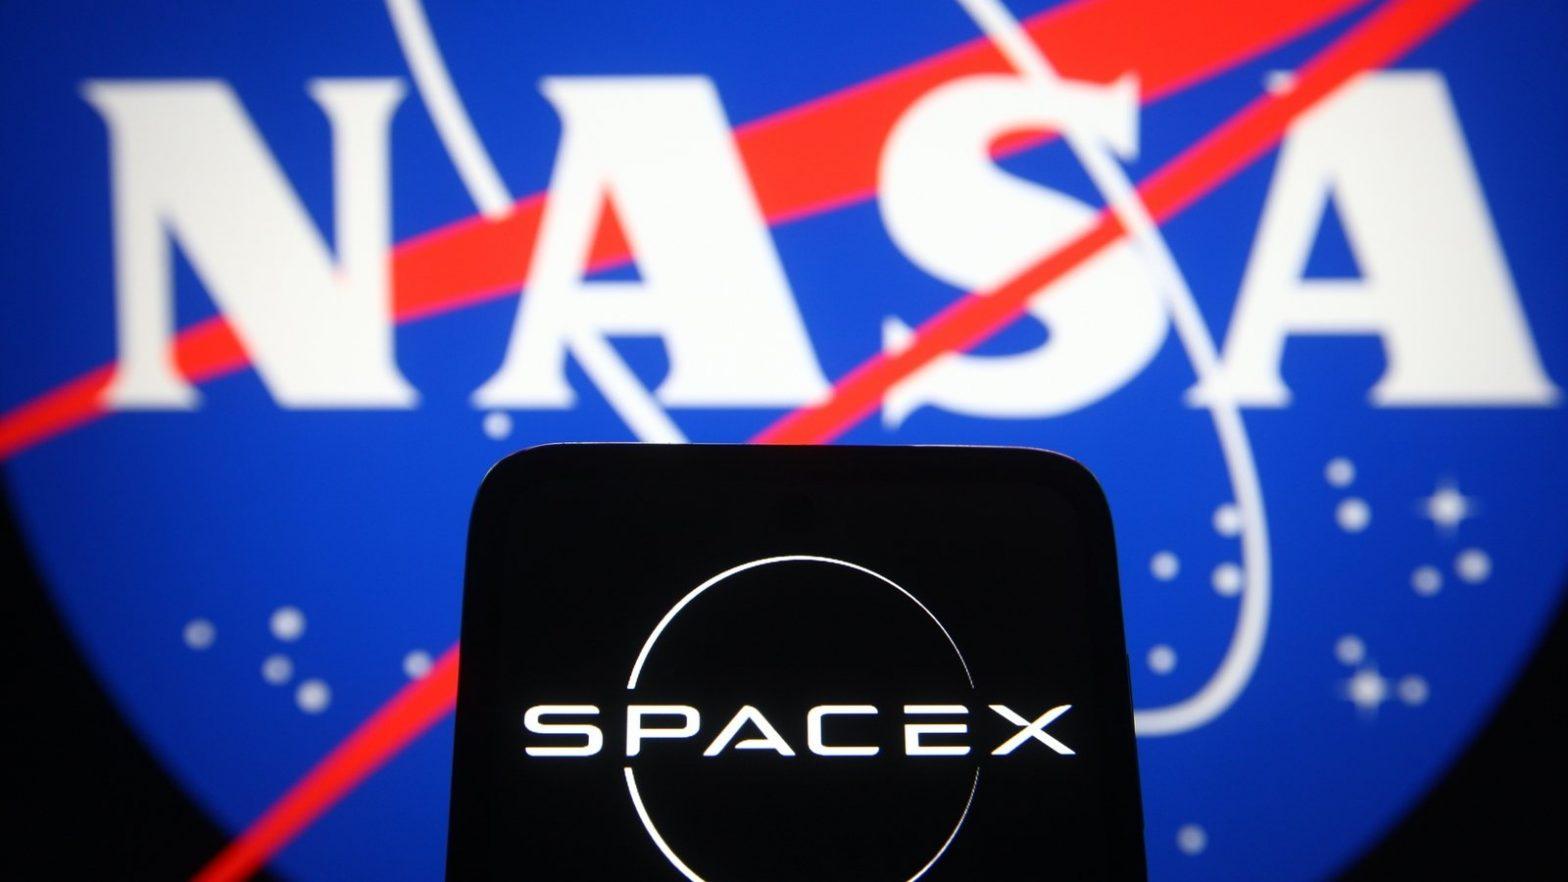 NASA selects SpaceX for Europa mission. नासाने युरोपा मोहिमेसाठी स्पेसएक्सची निवड केली